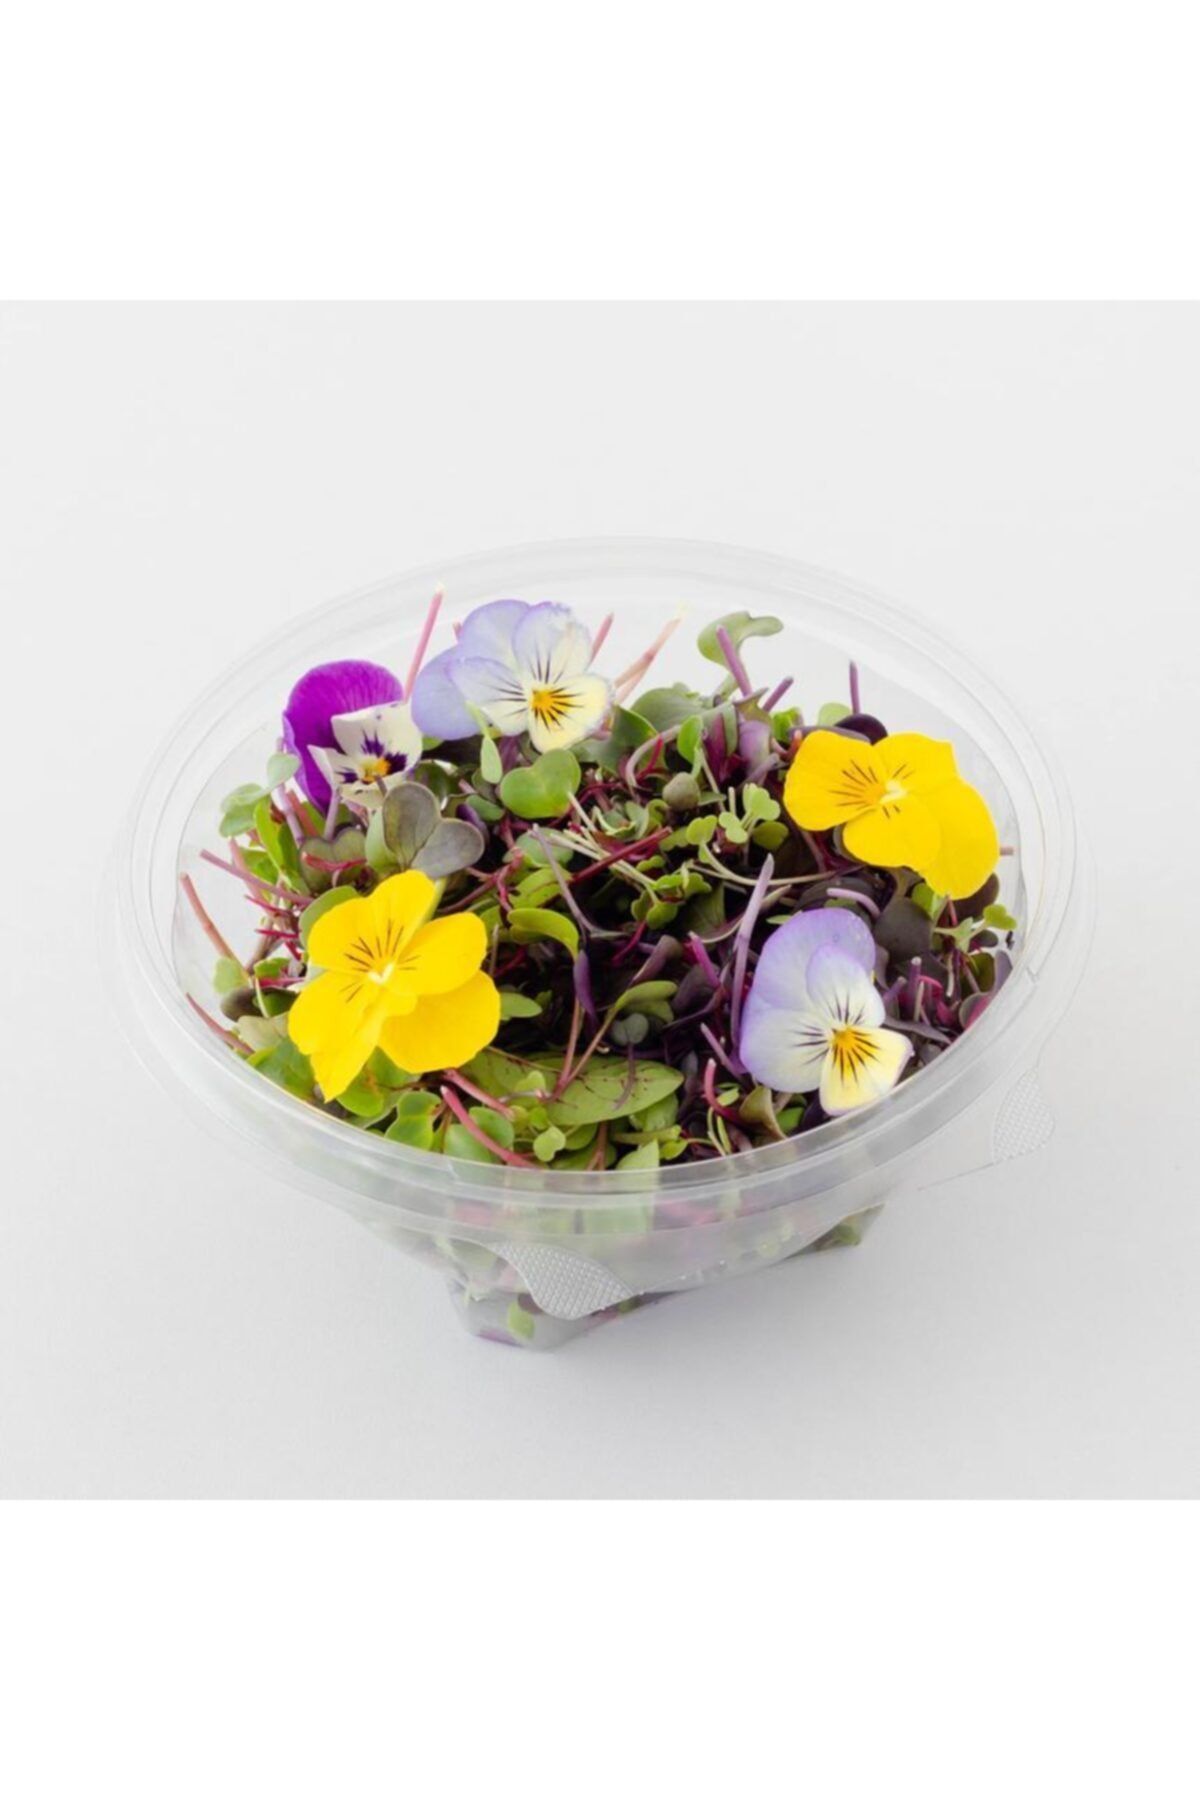 Mimi Çiftliği Yemeye Hazır Filiz Salatası- Şef Salata